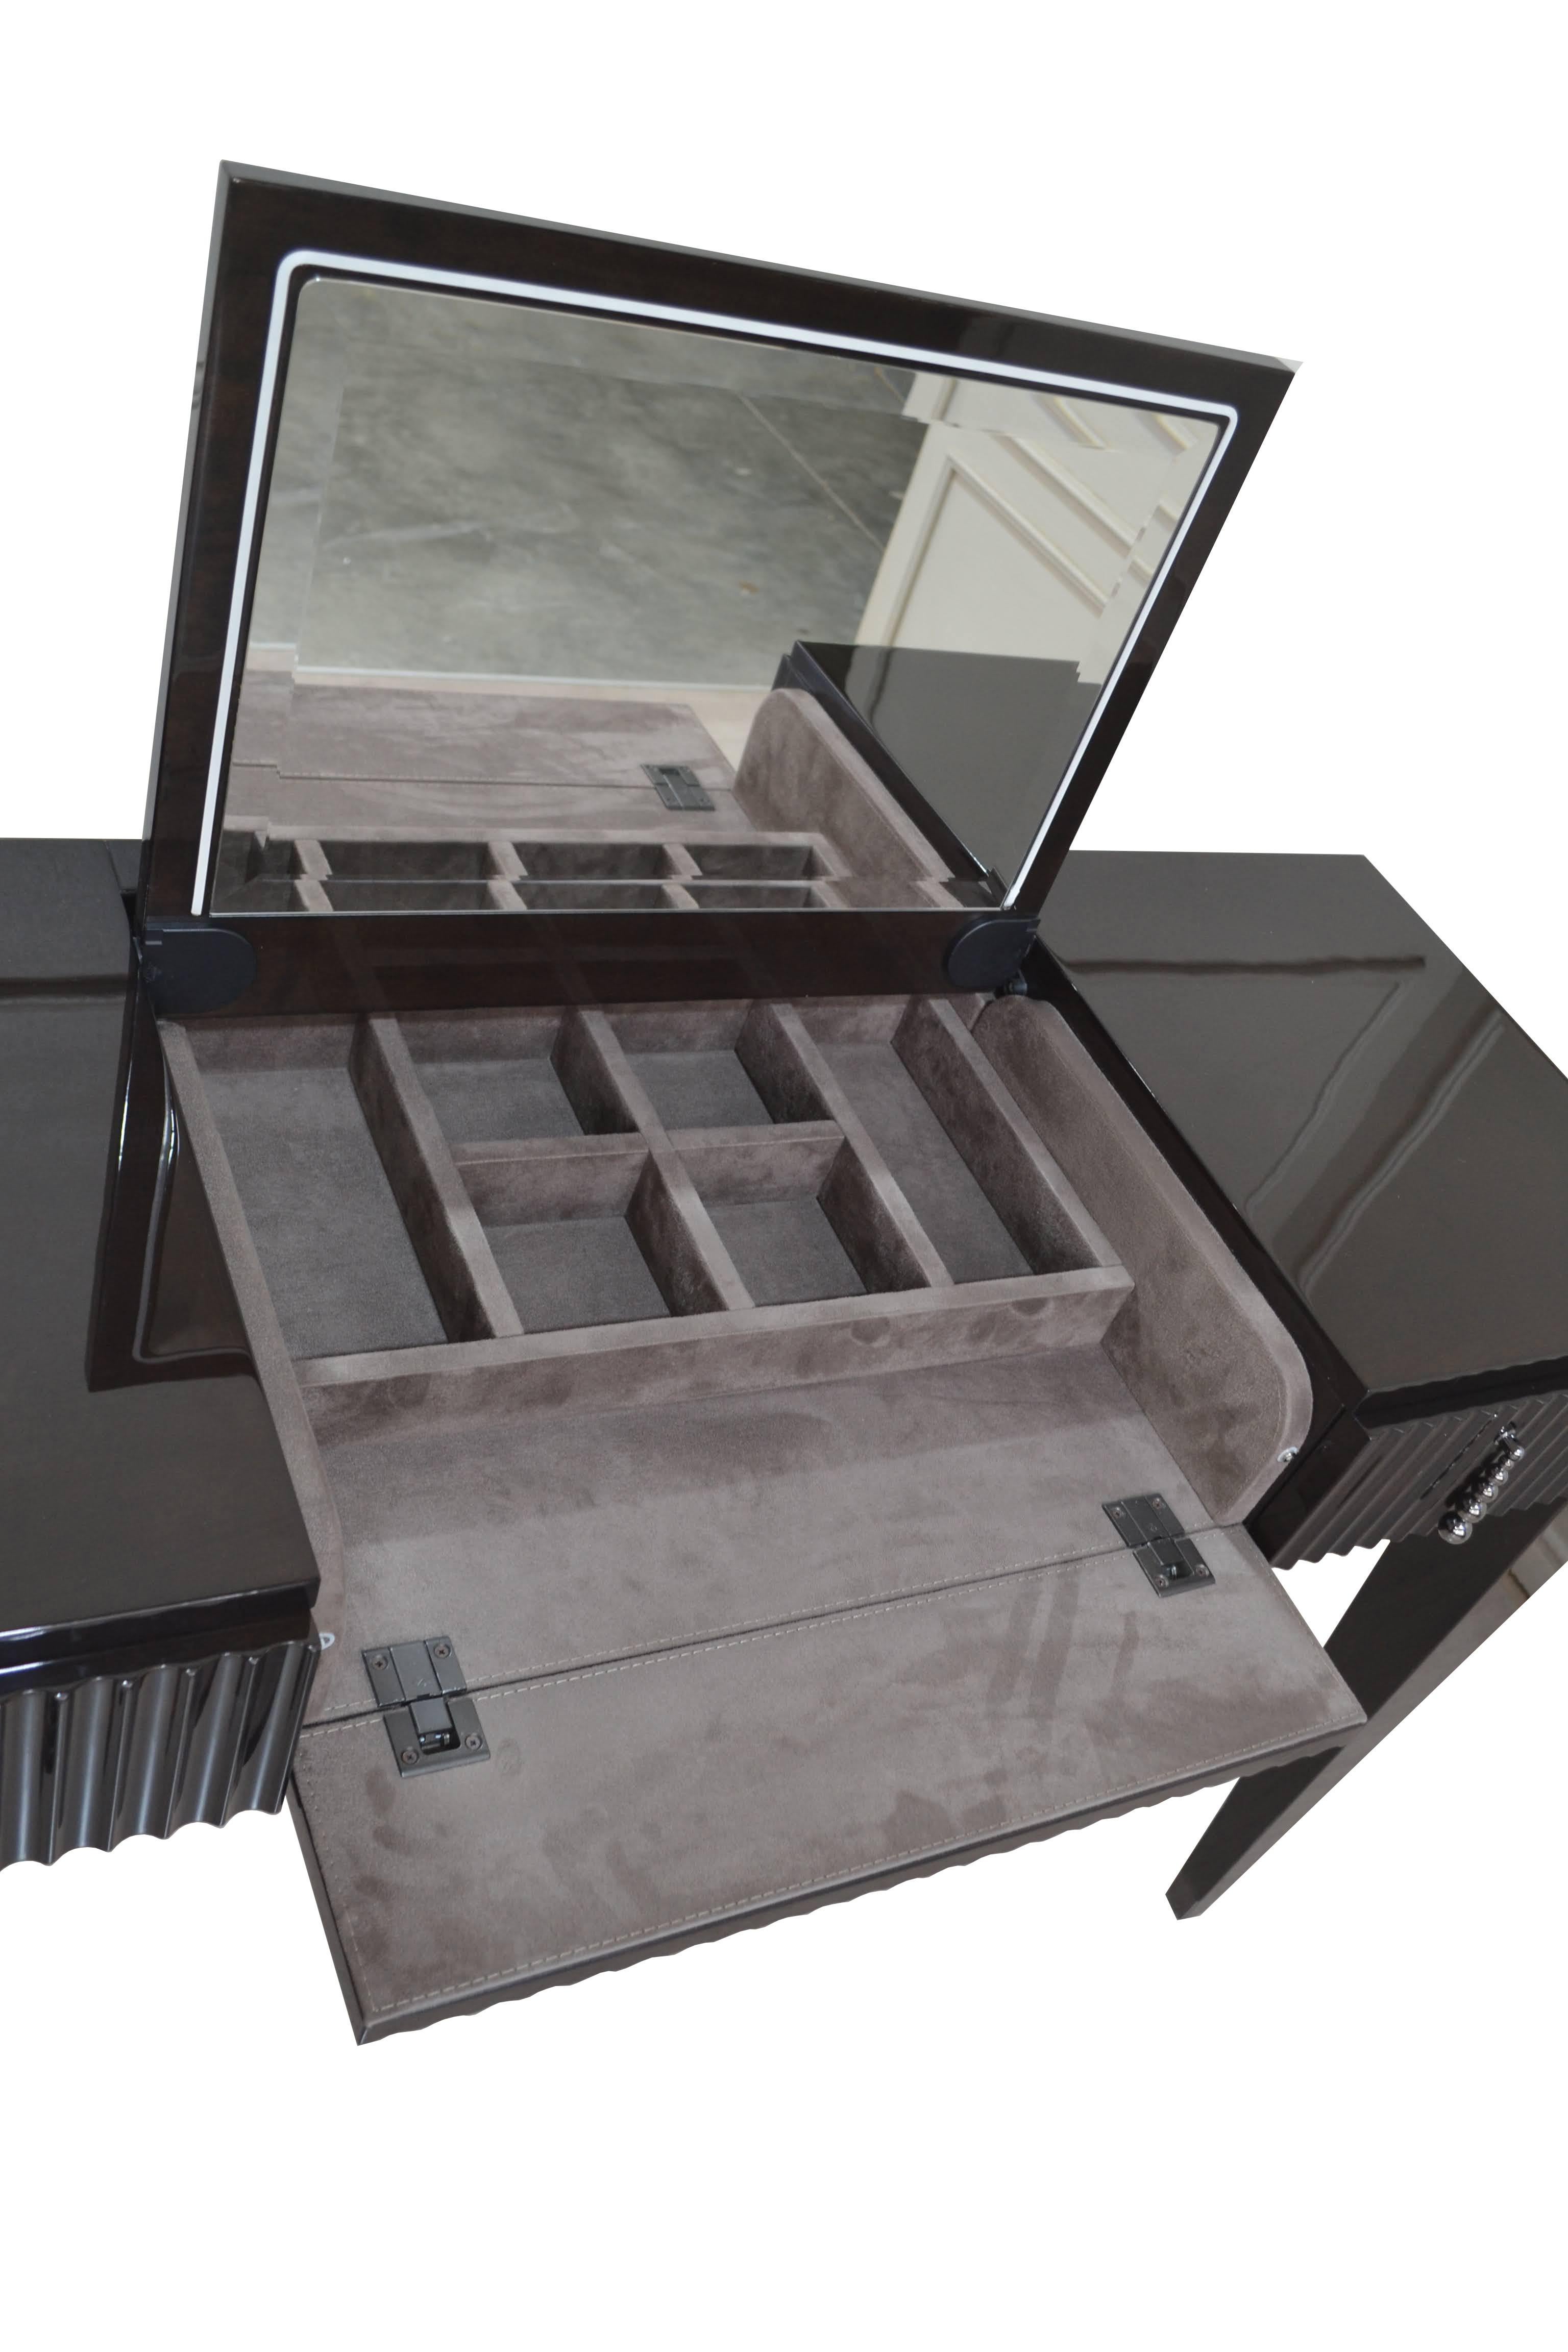 Très élégante table de toilette italienne en placage d'acajou brun foncé du style de l'époque Art Déco reposant sur quatre pieds avec une finition polie brillante. Dans le style du CAVIO, avec deux tiroirs, qui sont tapissés à l'intérieur. Ses